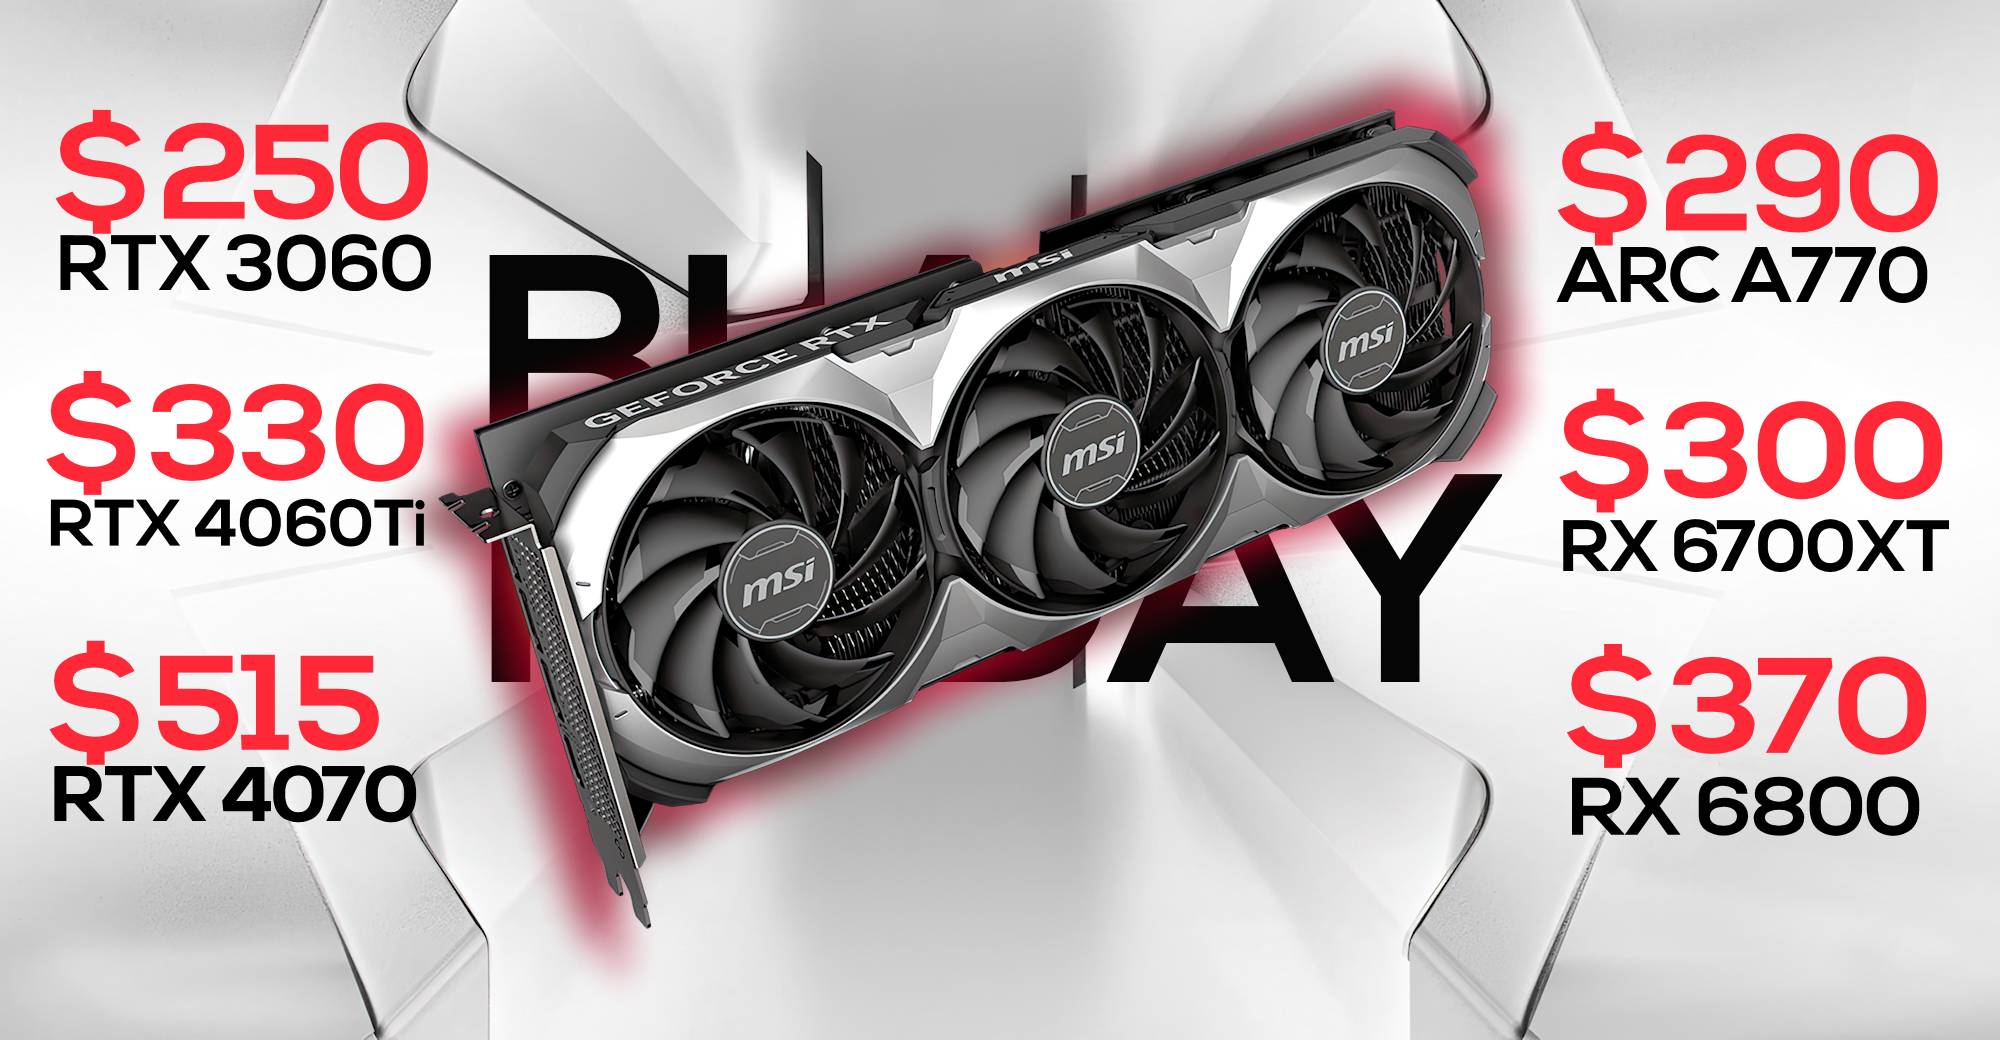 Black Friday GPU Deals: RTX 3060 12GB at $249, RTX 4060 Ti 8GB at